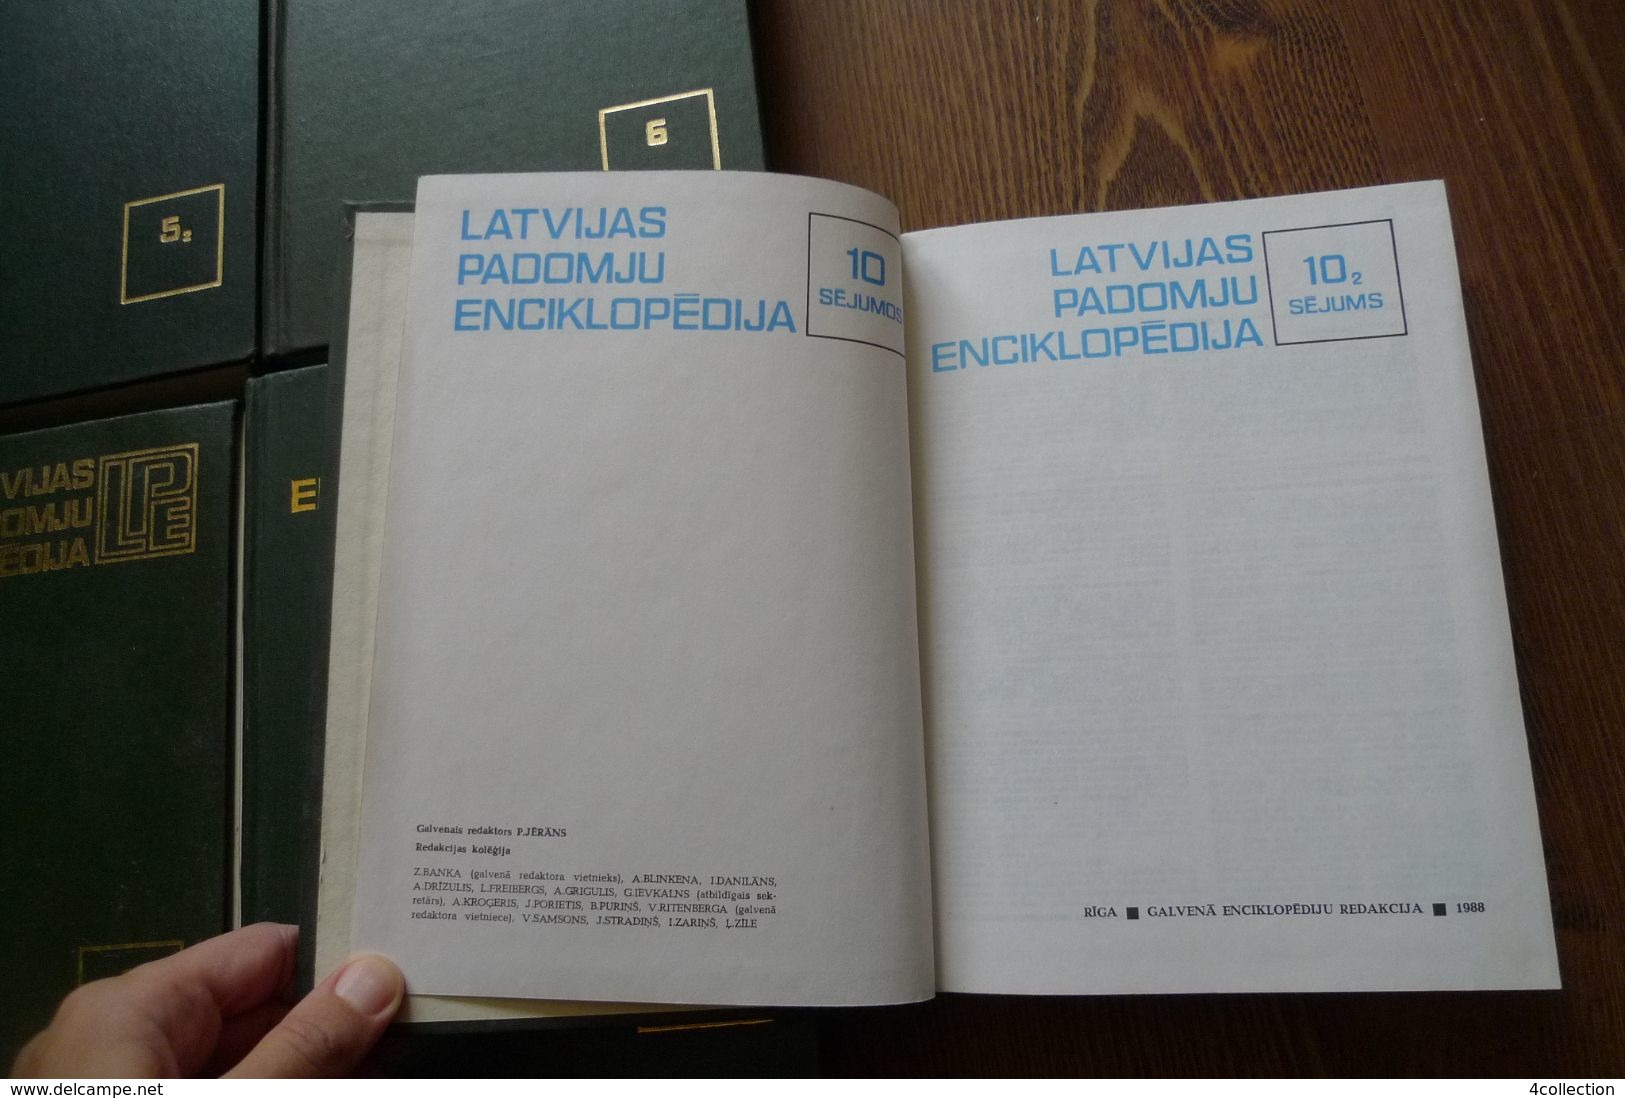 LPE Riga 1981 Old Illustrated Book Soviet Latvia ENCYCLOPAEDIA 11psc. Volumes Latvian set of books